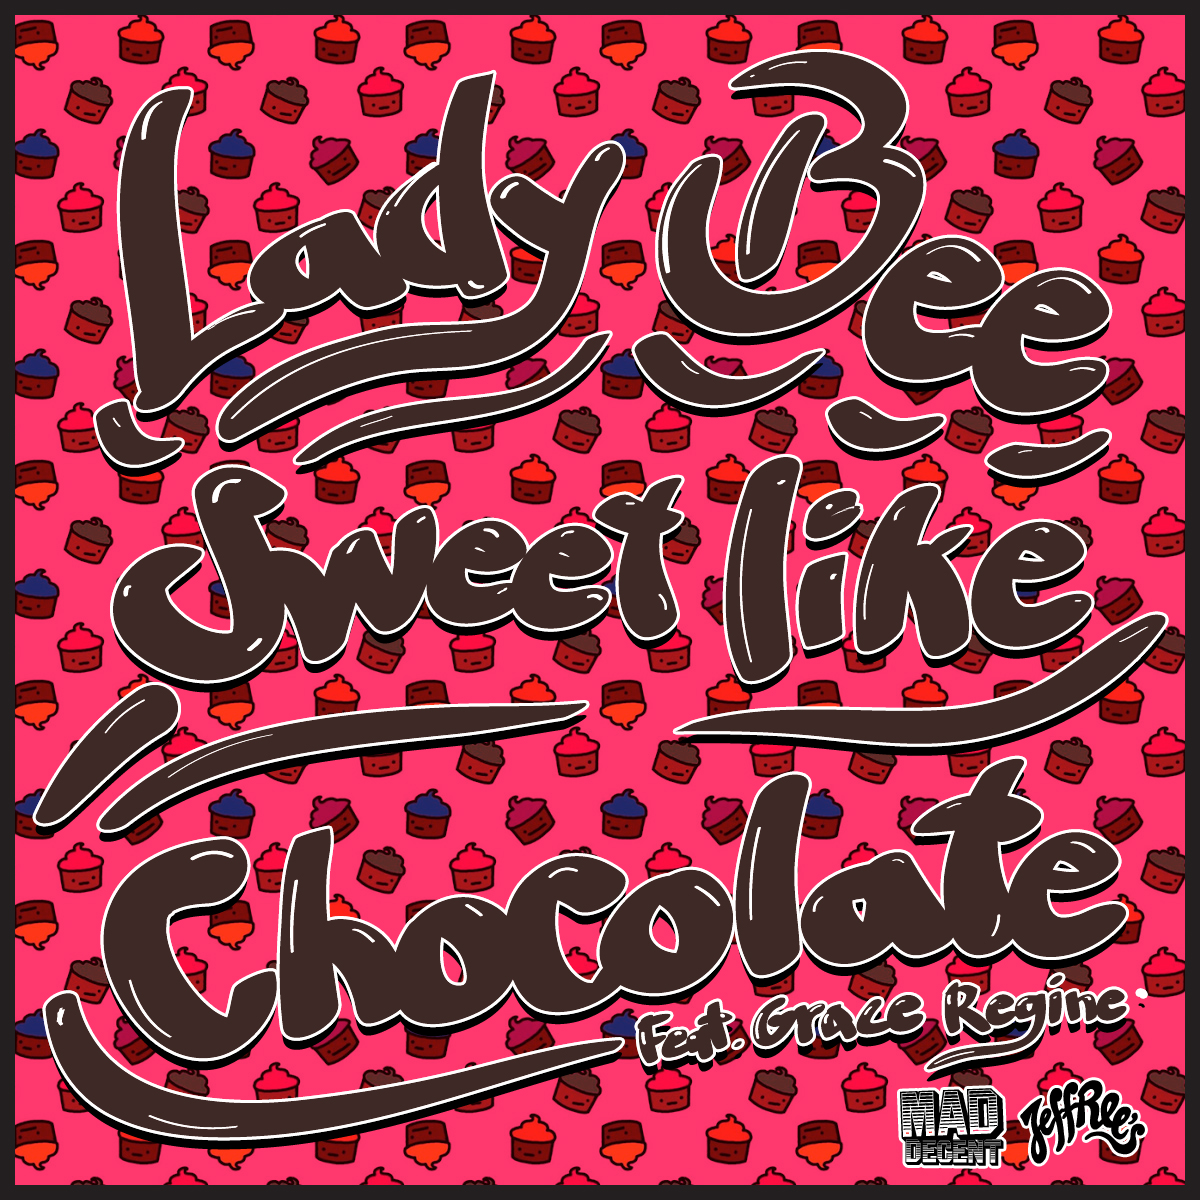 Sweet Bee песня. Lady Bee Memphis. Chocolate mp3. Sweet Bee. They like sweets